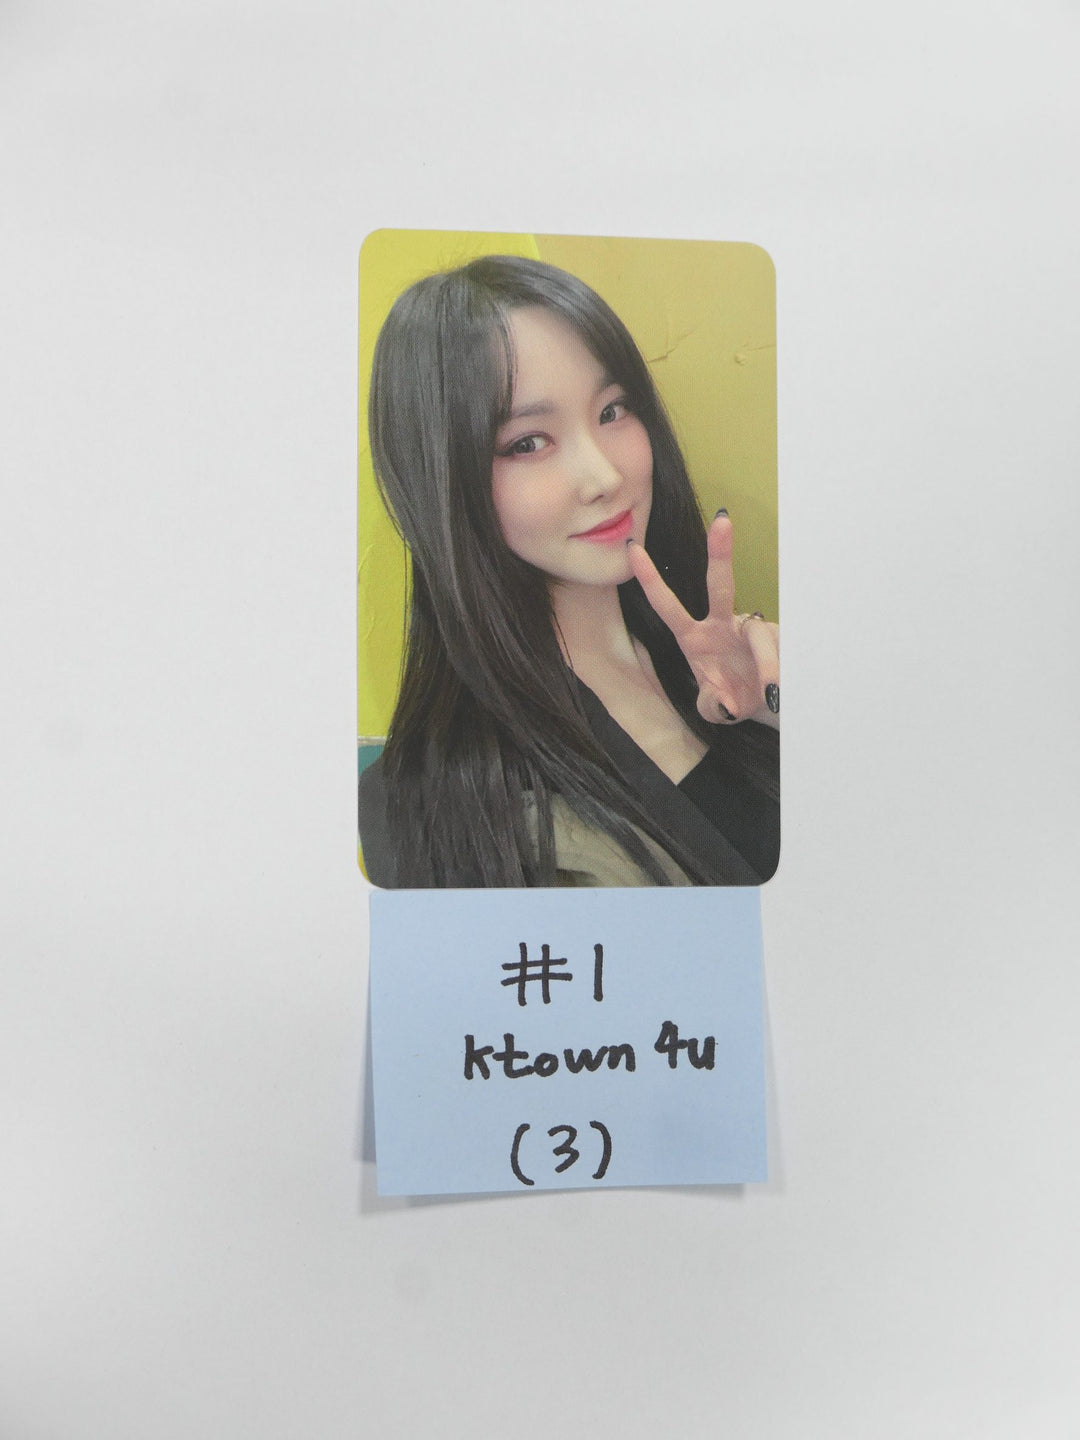 YUJU (Of 여자친구) "[REC.]" - Ktown4U 예약판매 혜택 포토카드